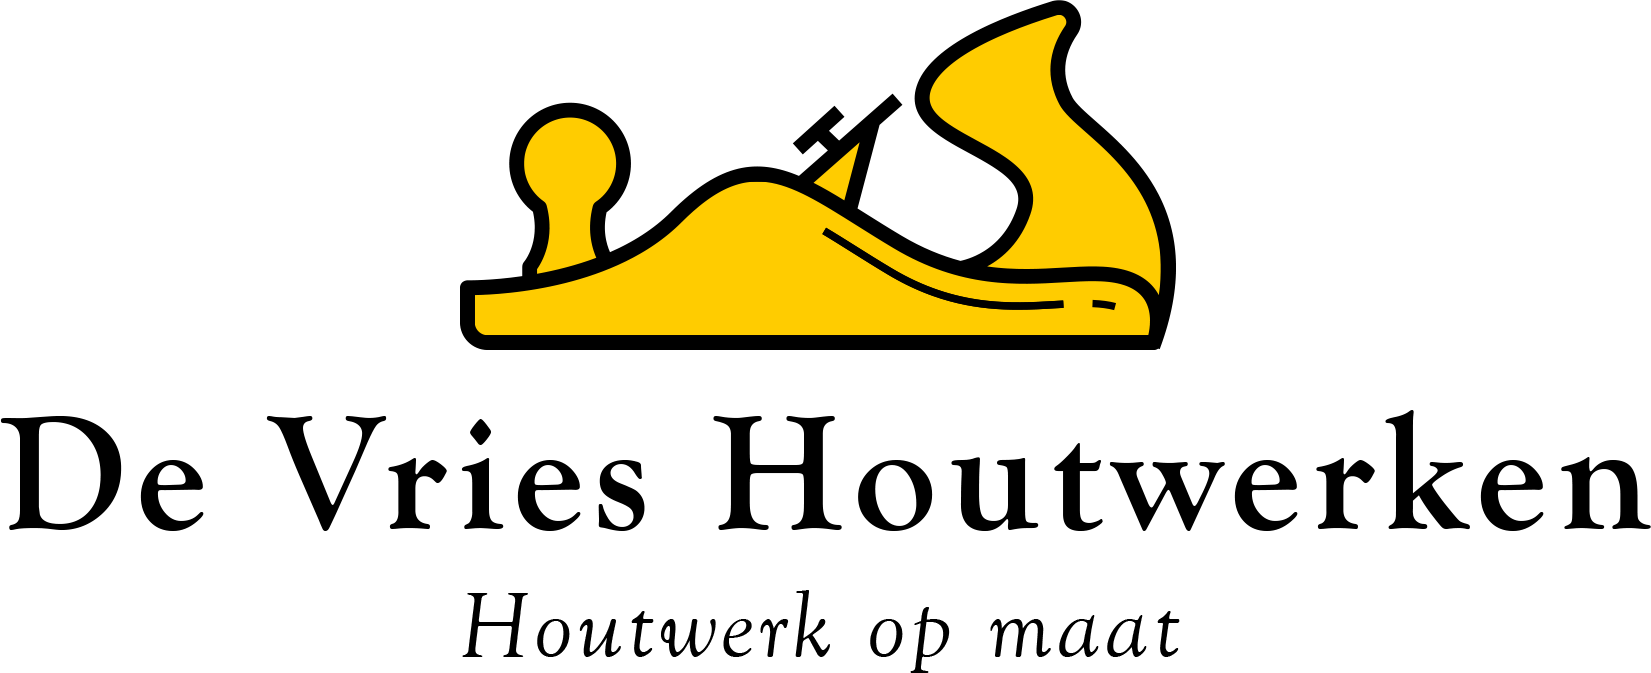 De Vries Houtwerken - Houtwerk op maat